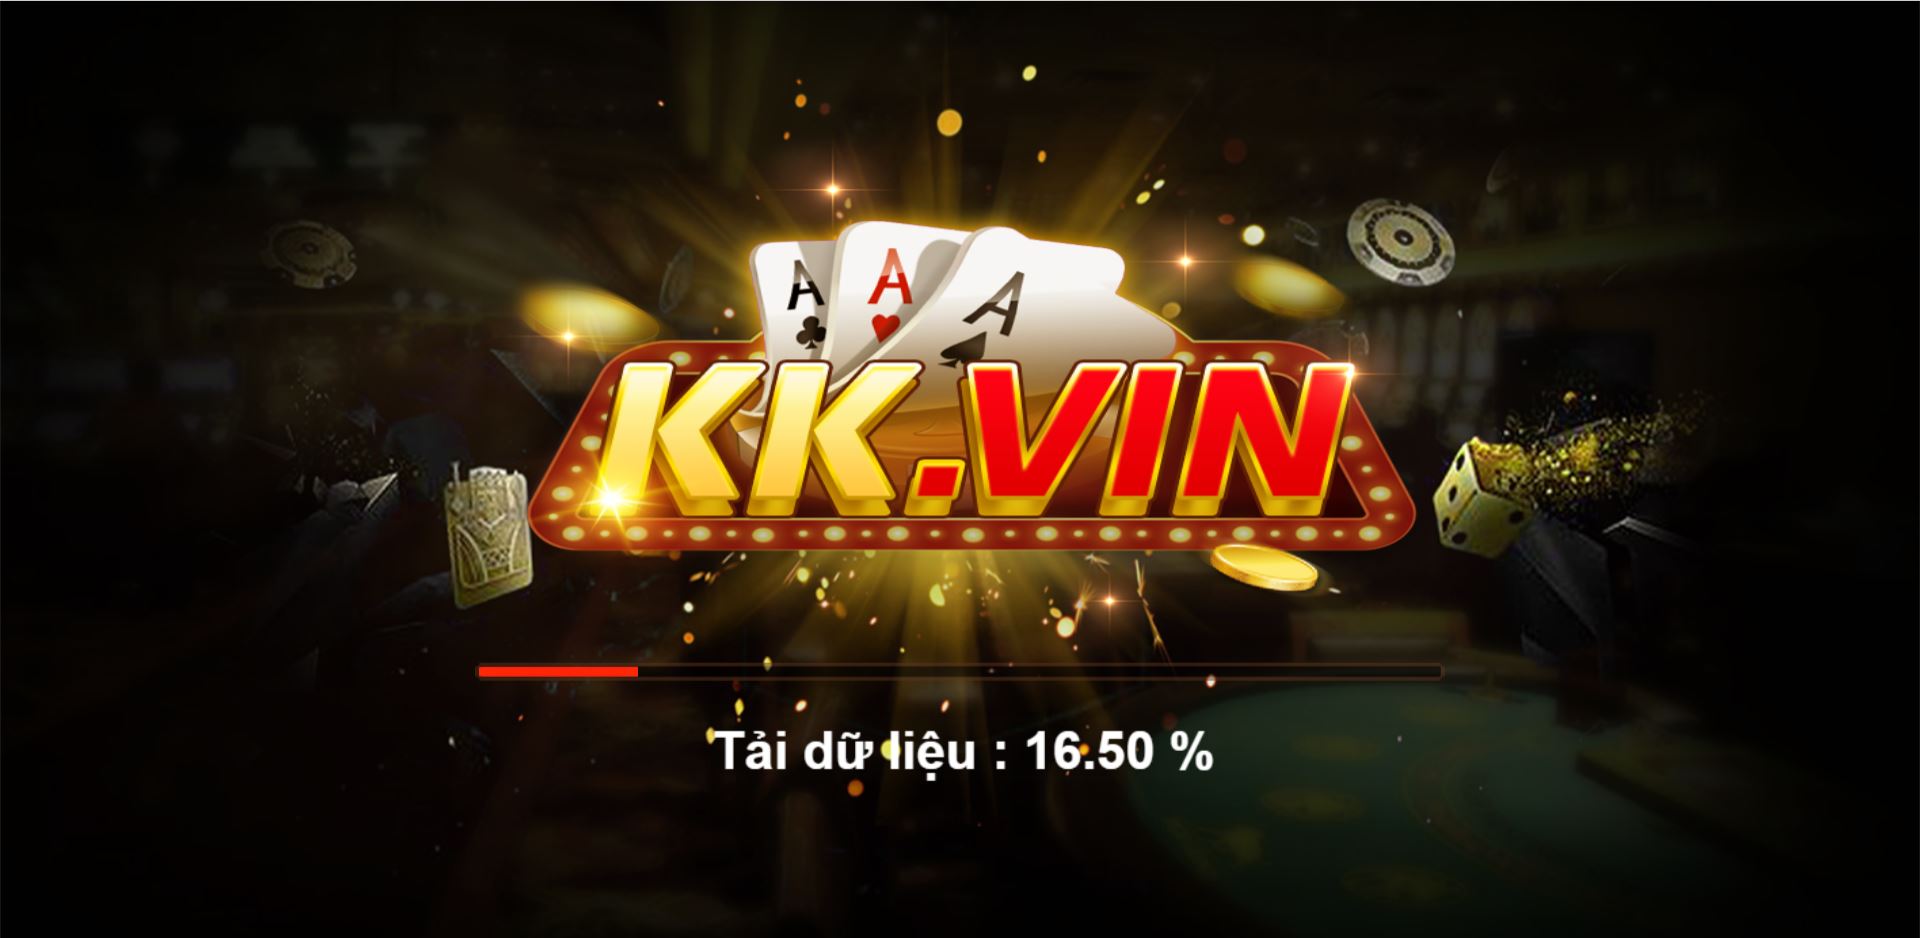 Kk Vin – Game Bài Bom Tấn Mừng Năm Mới